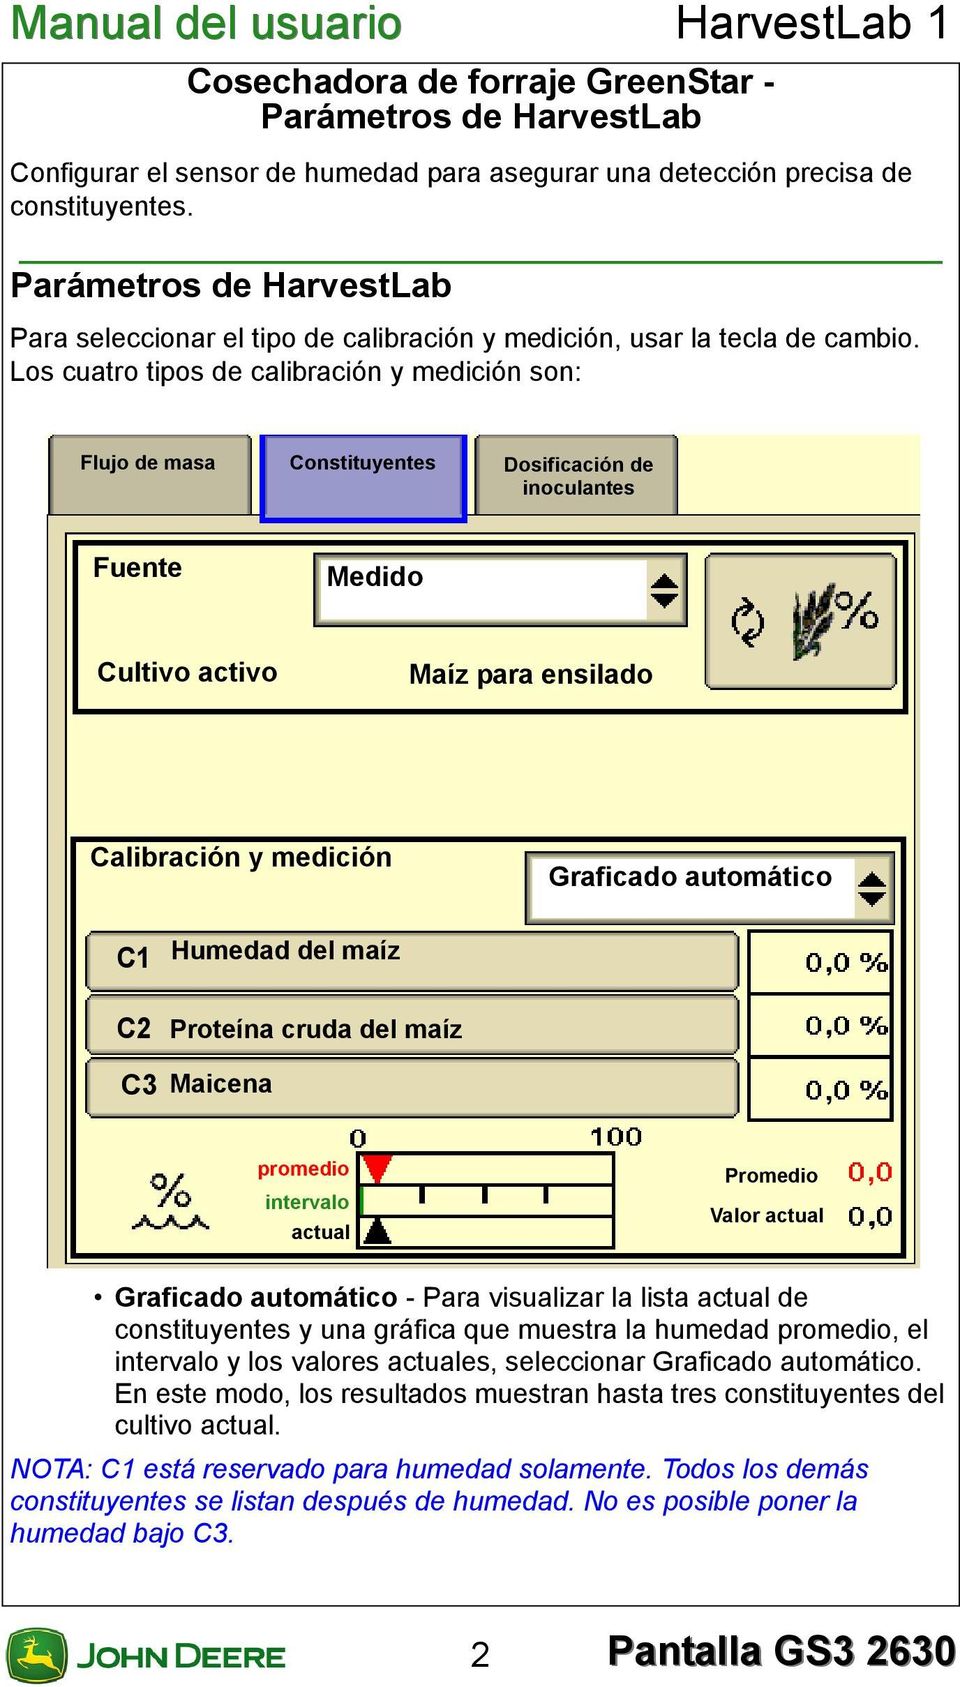 Los cuatro tipos de calibración y medición son: Flujo de masa Constituyentes Dosificación de inoculantes Fuente Medido Cultivo activo Maíz para ensilado Calibración y medición Graficado automático C1